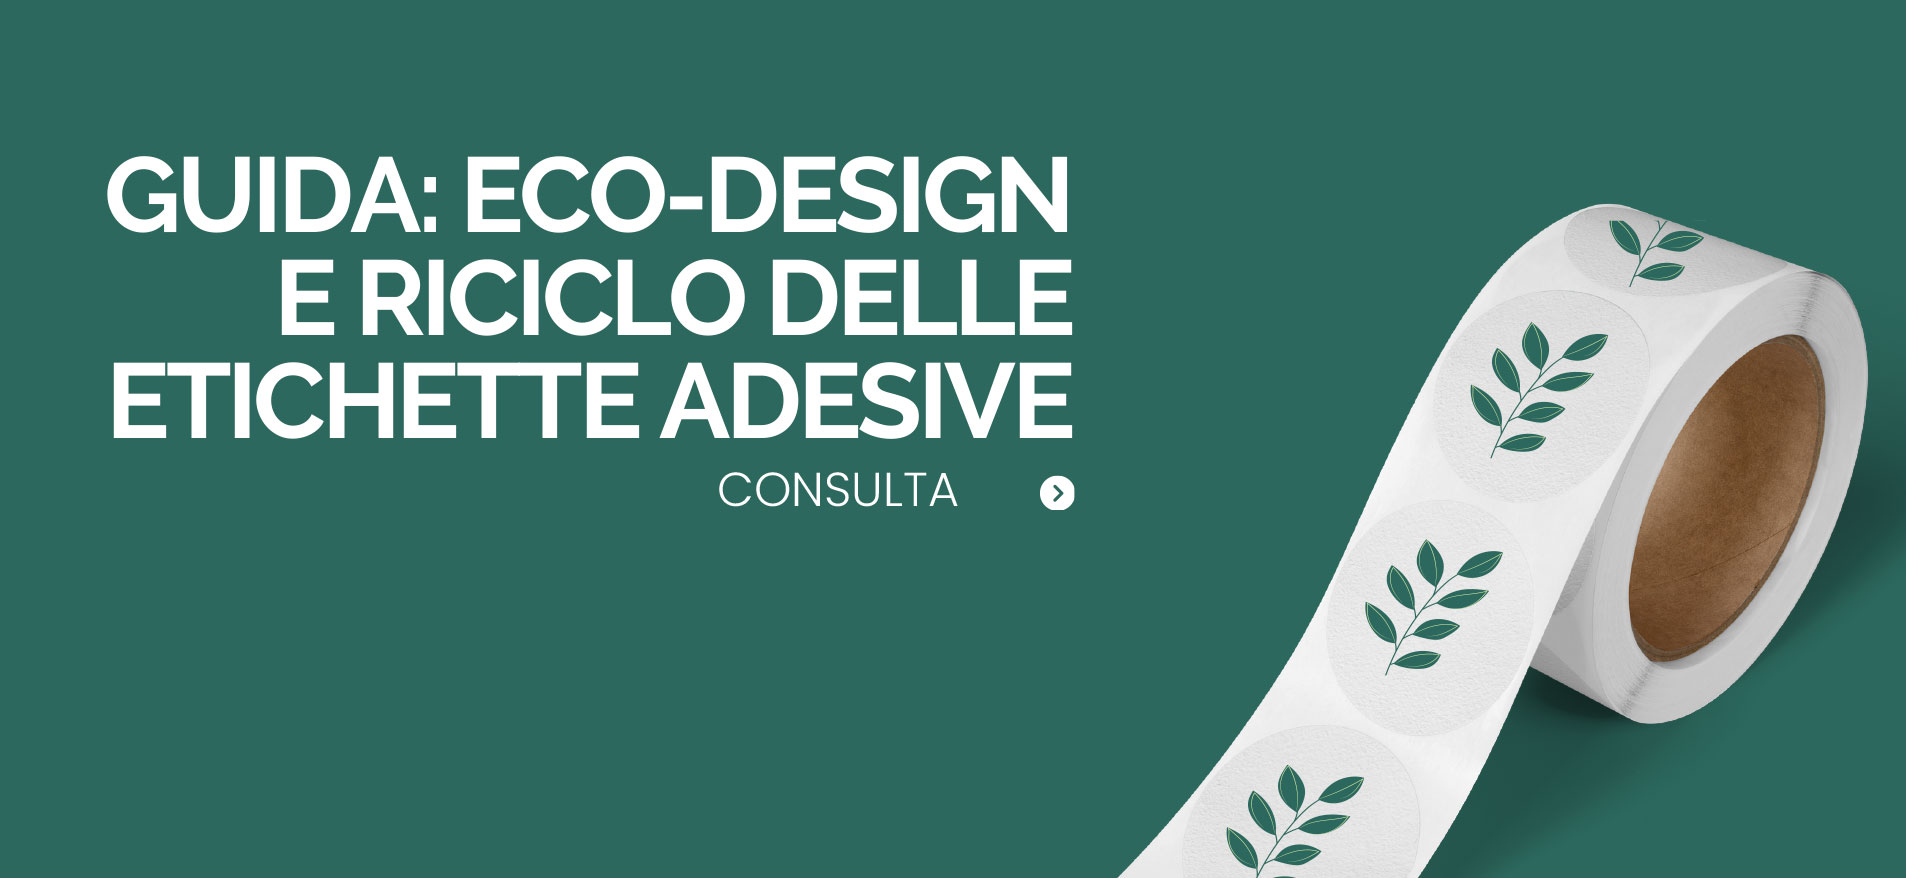 Eco design e riciclo delle etichette adesive